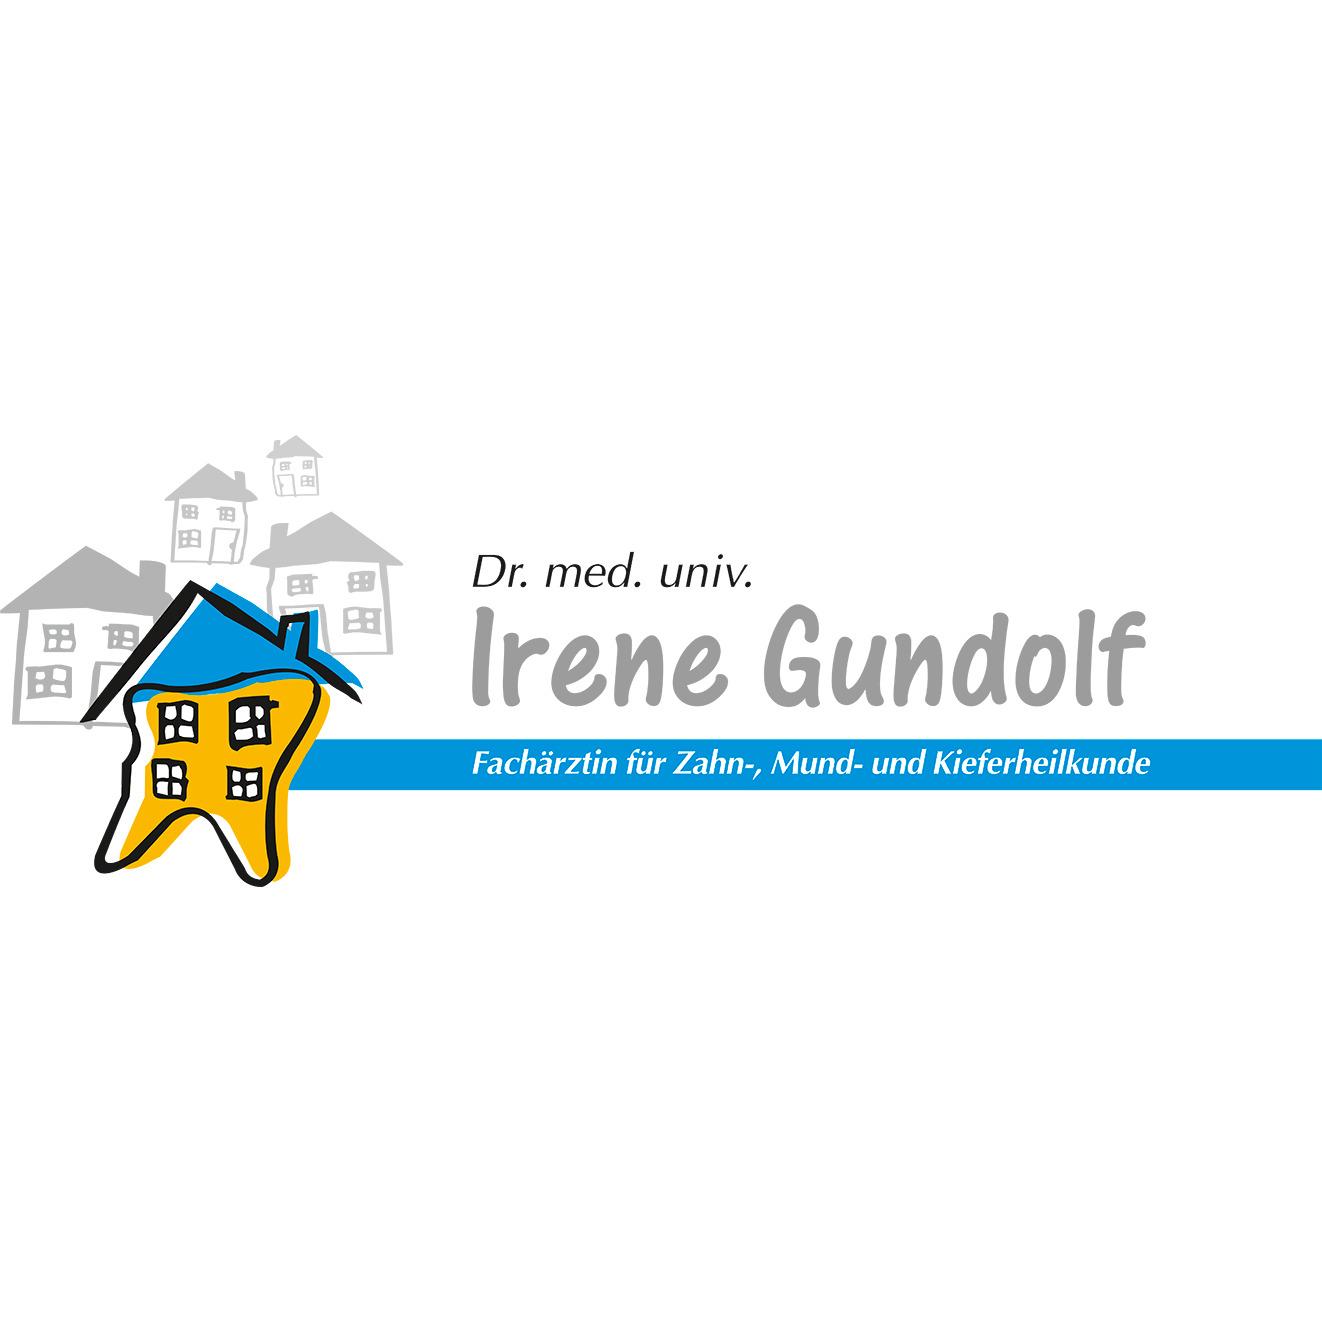 Dr. med. univ. Irene Gundolf